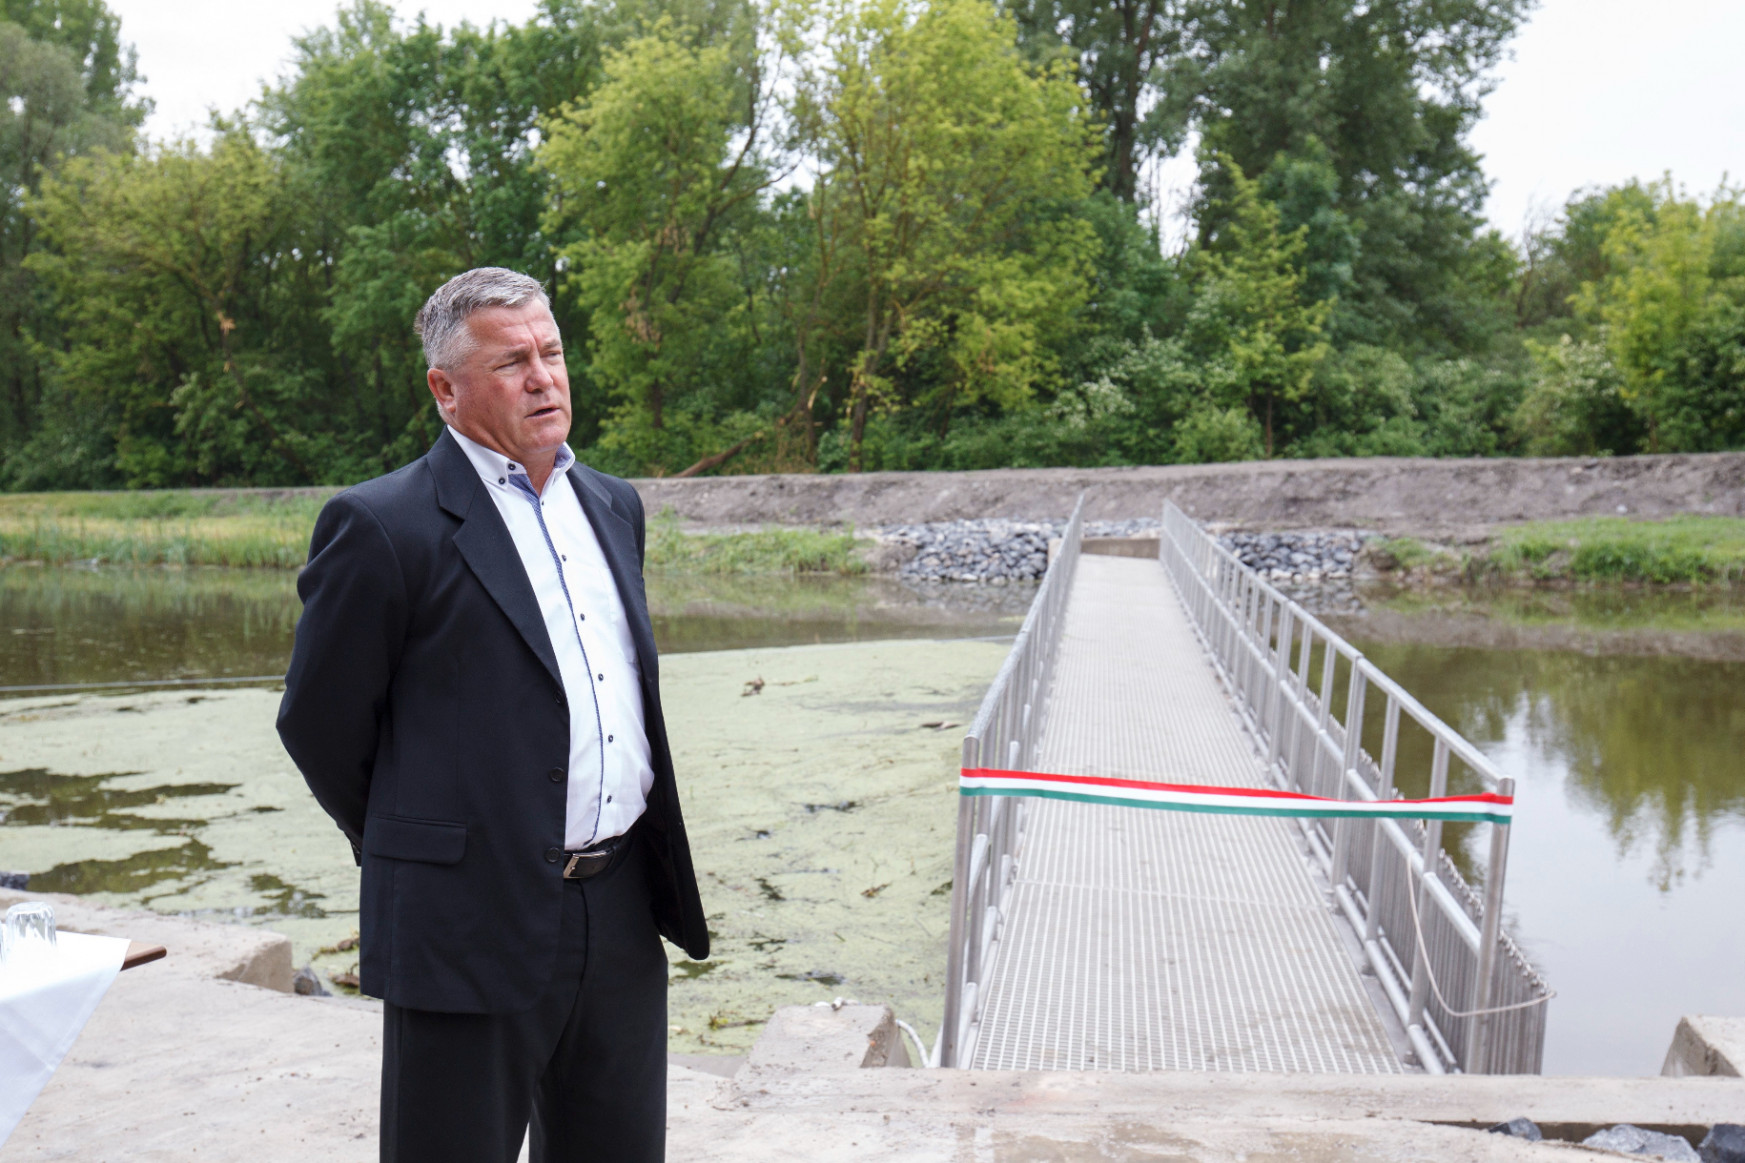 Miniszteri biztos fog vigyázni a Balaton élővilágára és vízminőségére